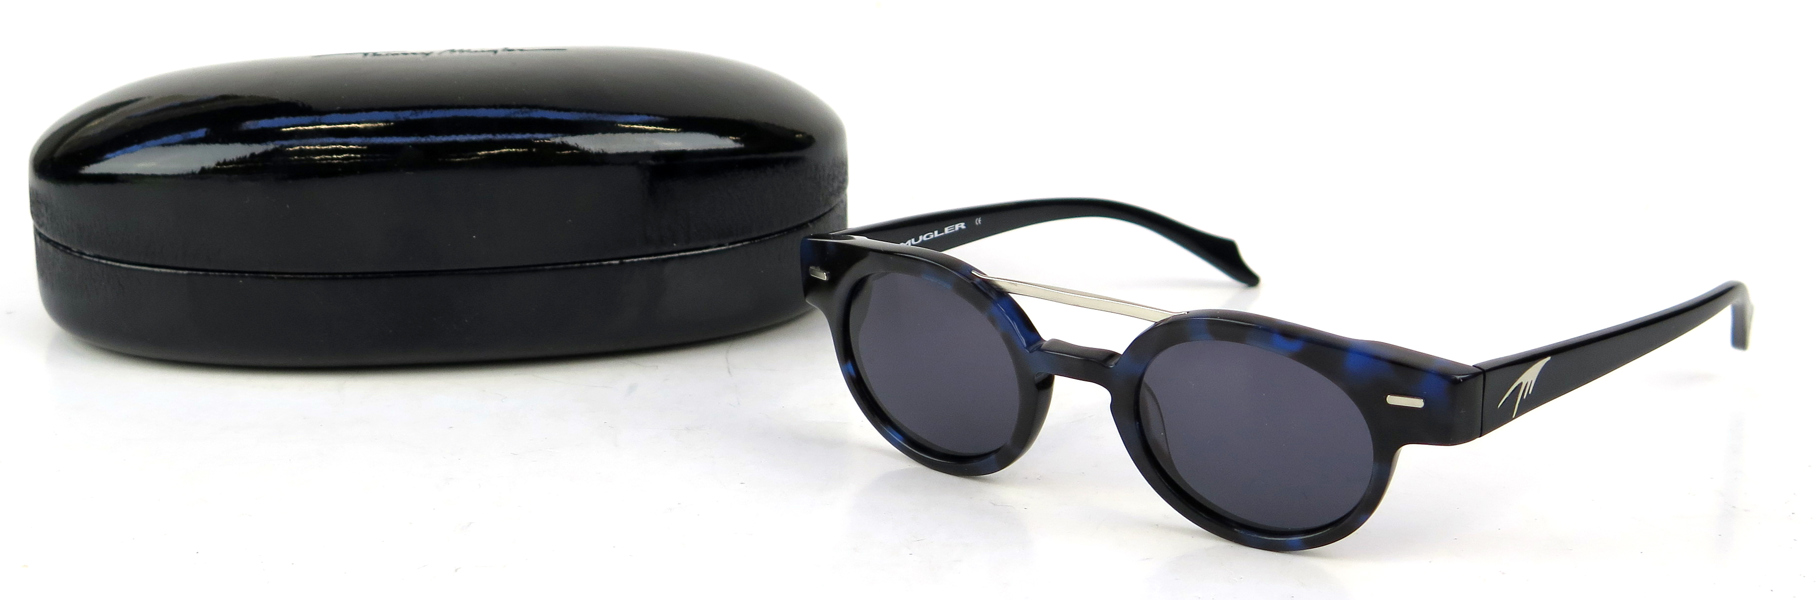 Solglasögon, 1 par, i etui, Thierry Mugler, TM 10190 C2, oanvända i originalförpackning_28817a_lg.jpeg